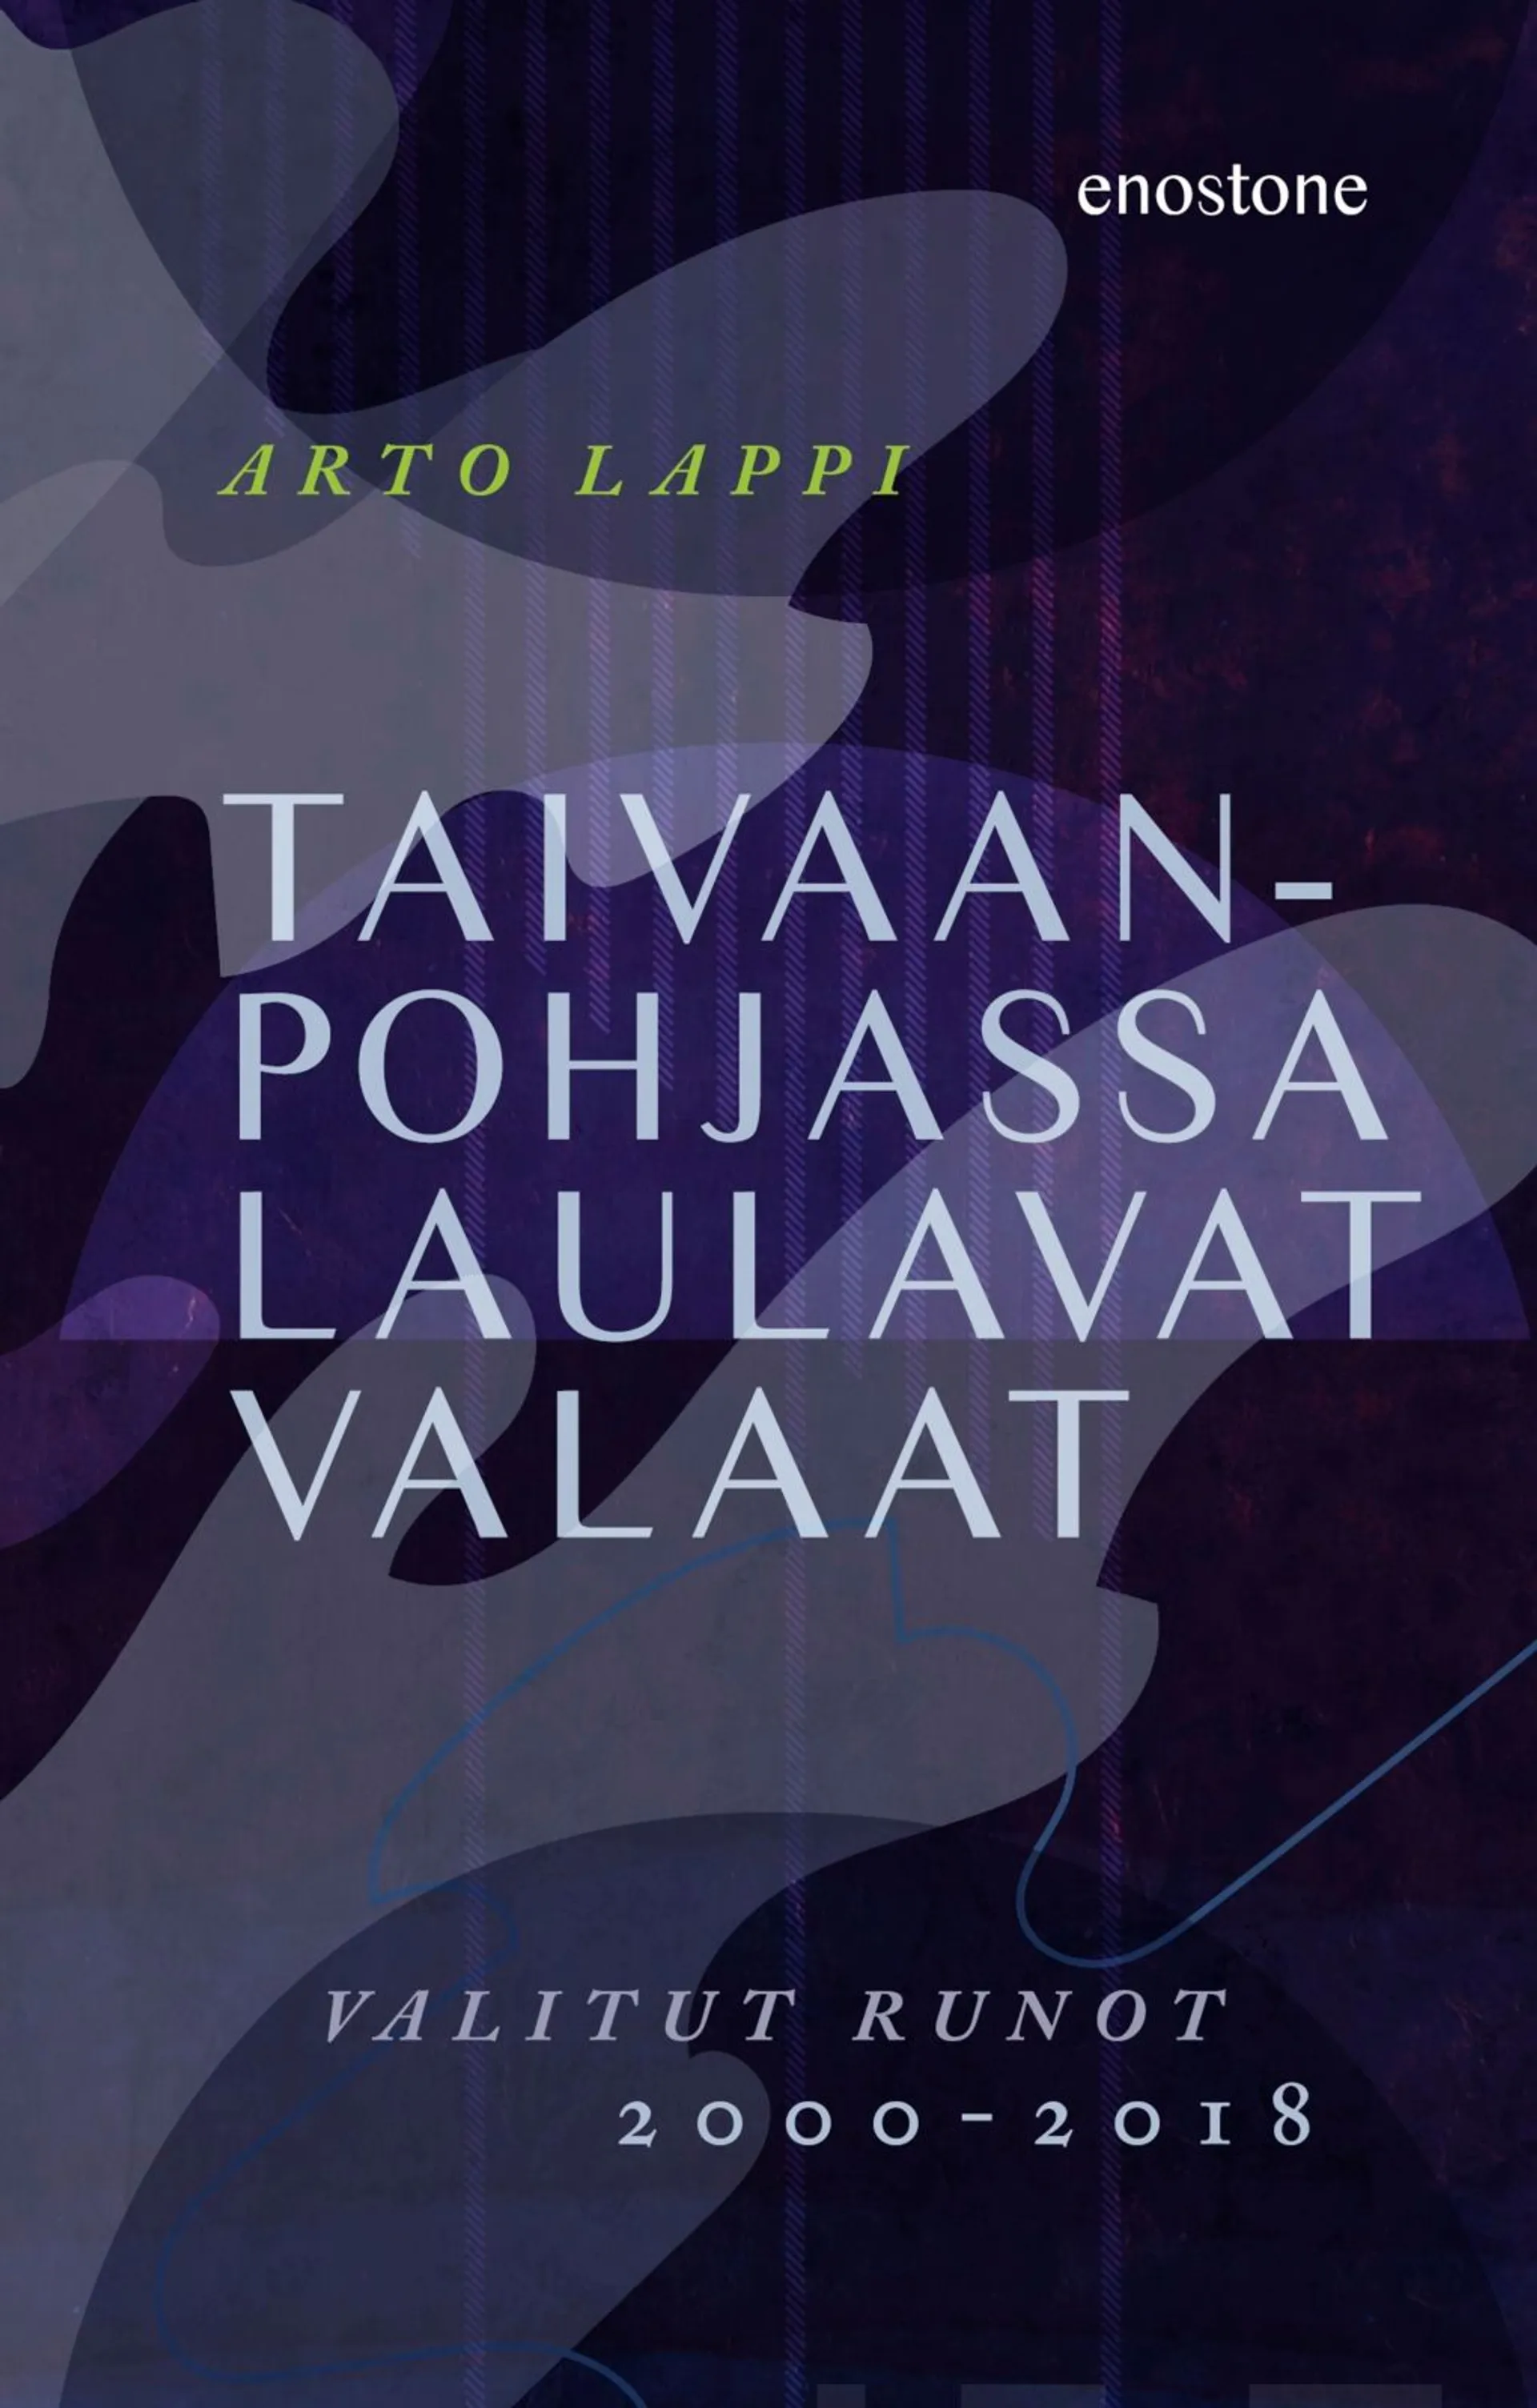 Lappi, Taivaanpohjassa laulavat valaat - Valitut runot 2000-2018